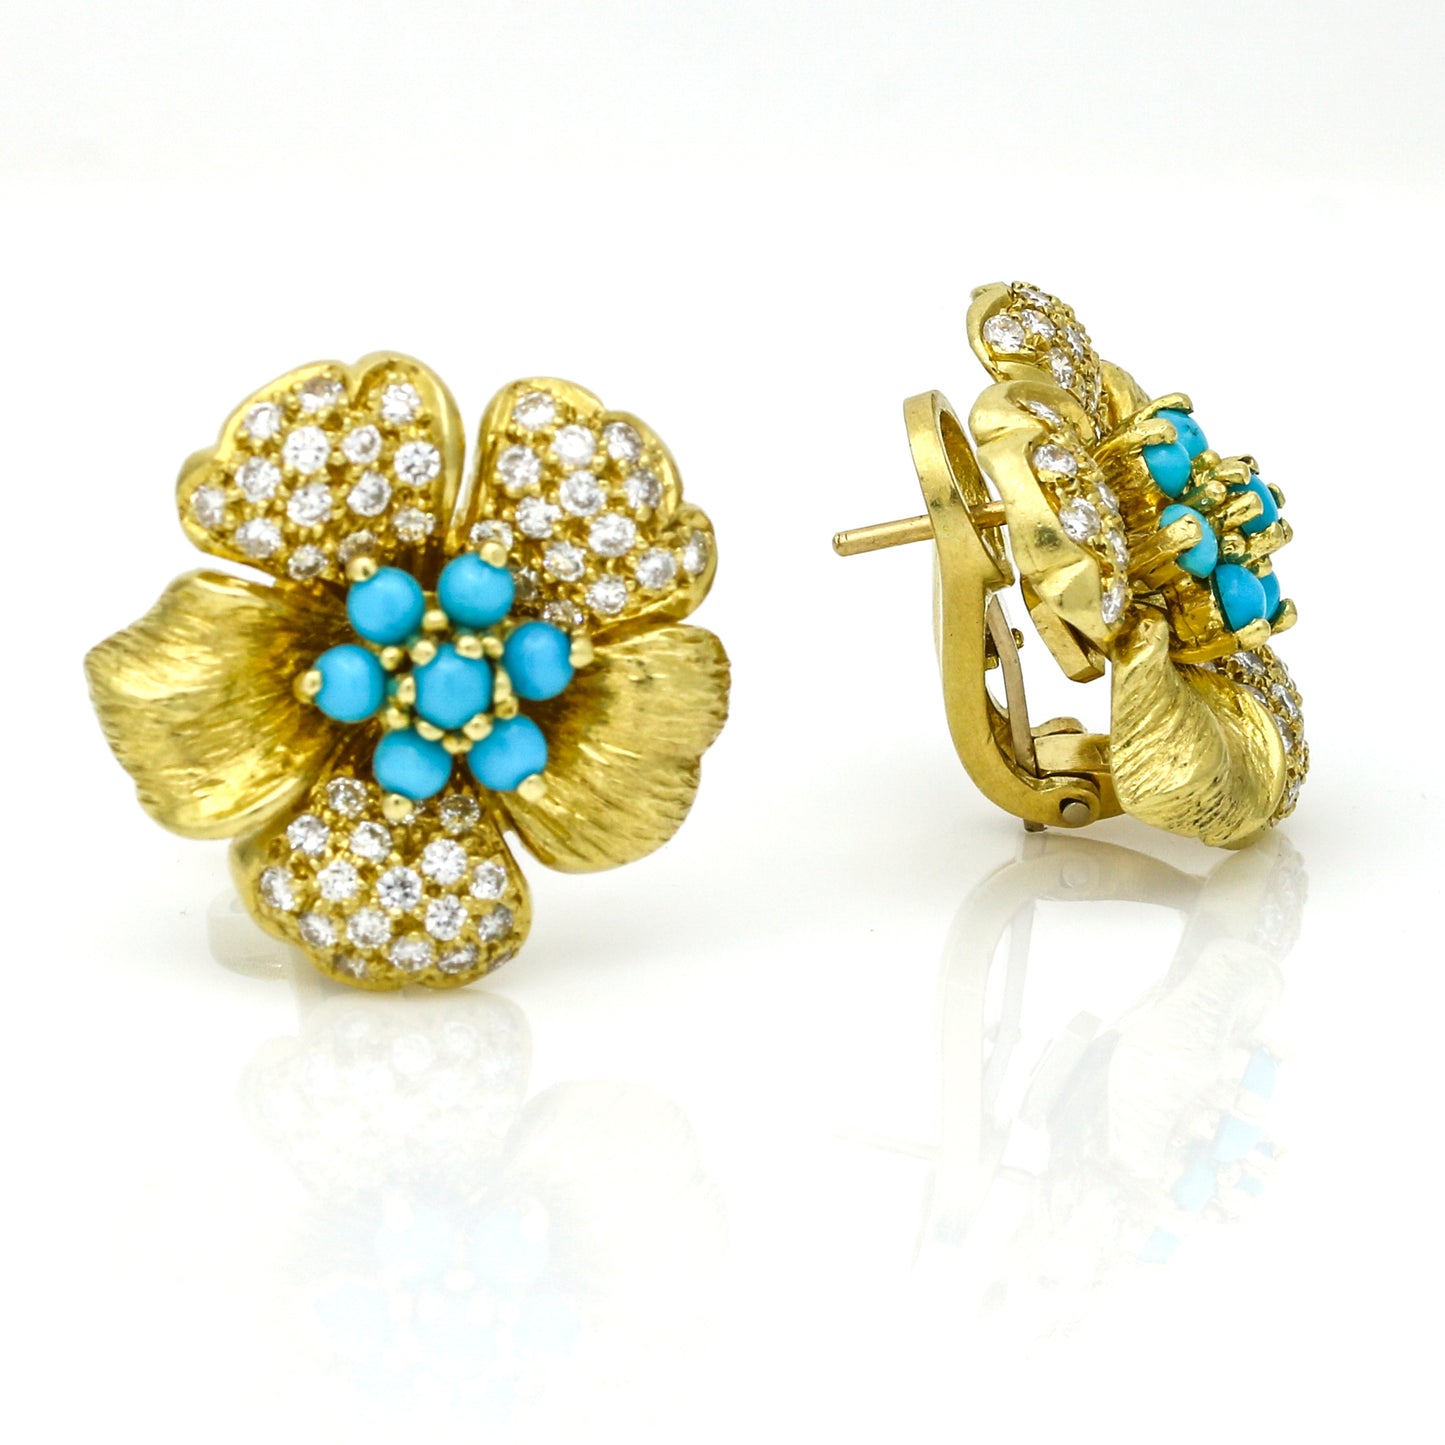 Turquoise Diamond Five Petal Flower Earrings in 18k Yellow Gold